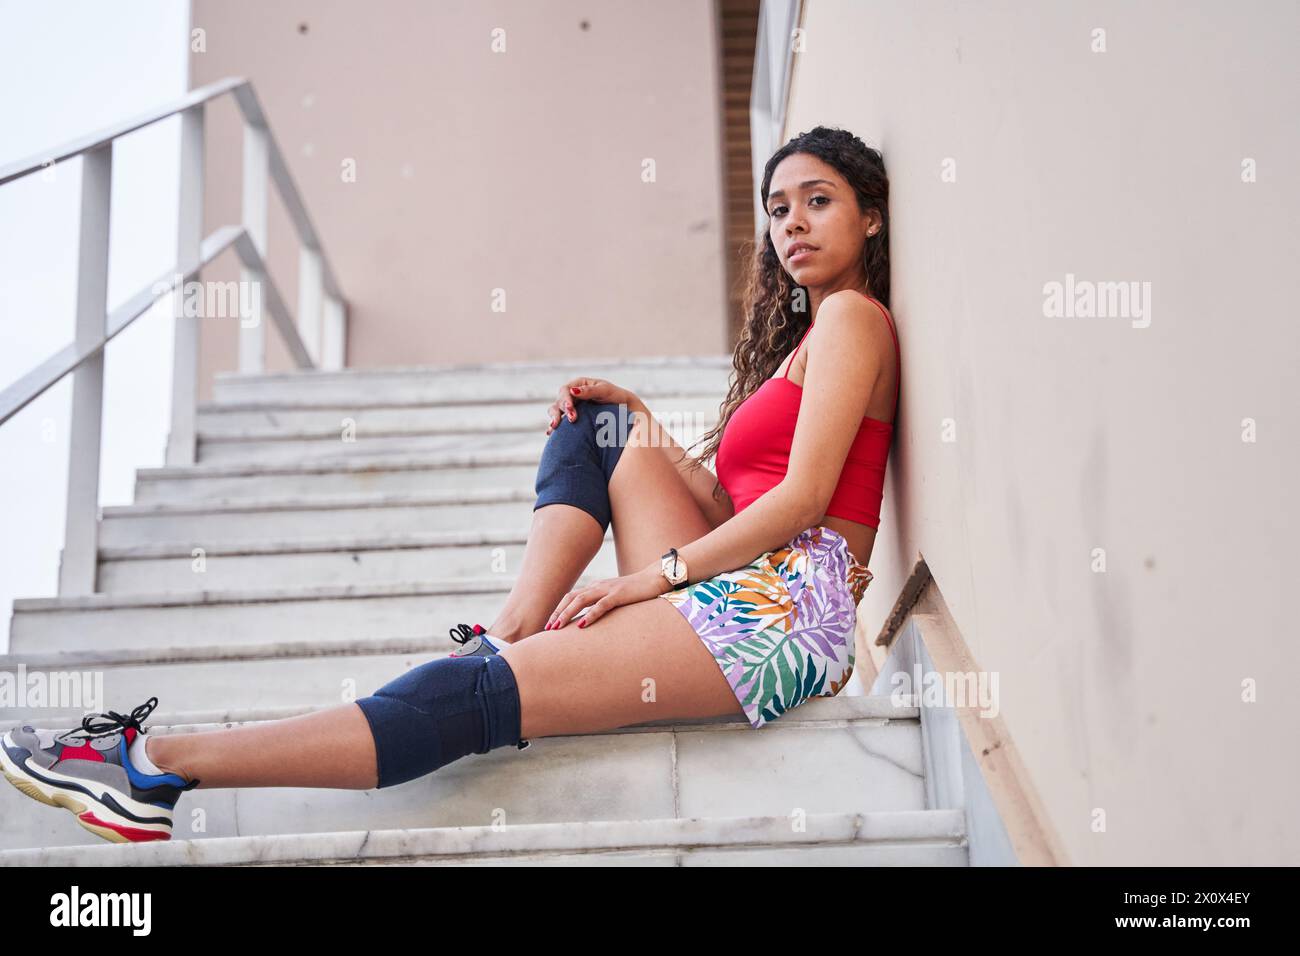 Junge Latina, die auf der Treppe sitzt und auf die Kamera blickt Stockfoto